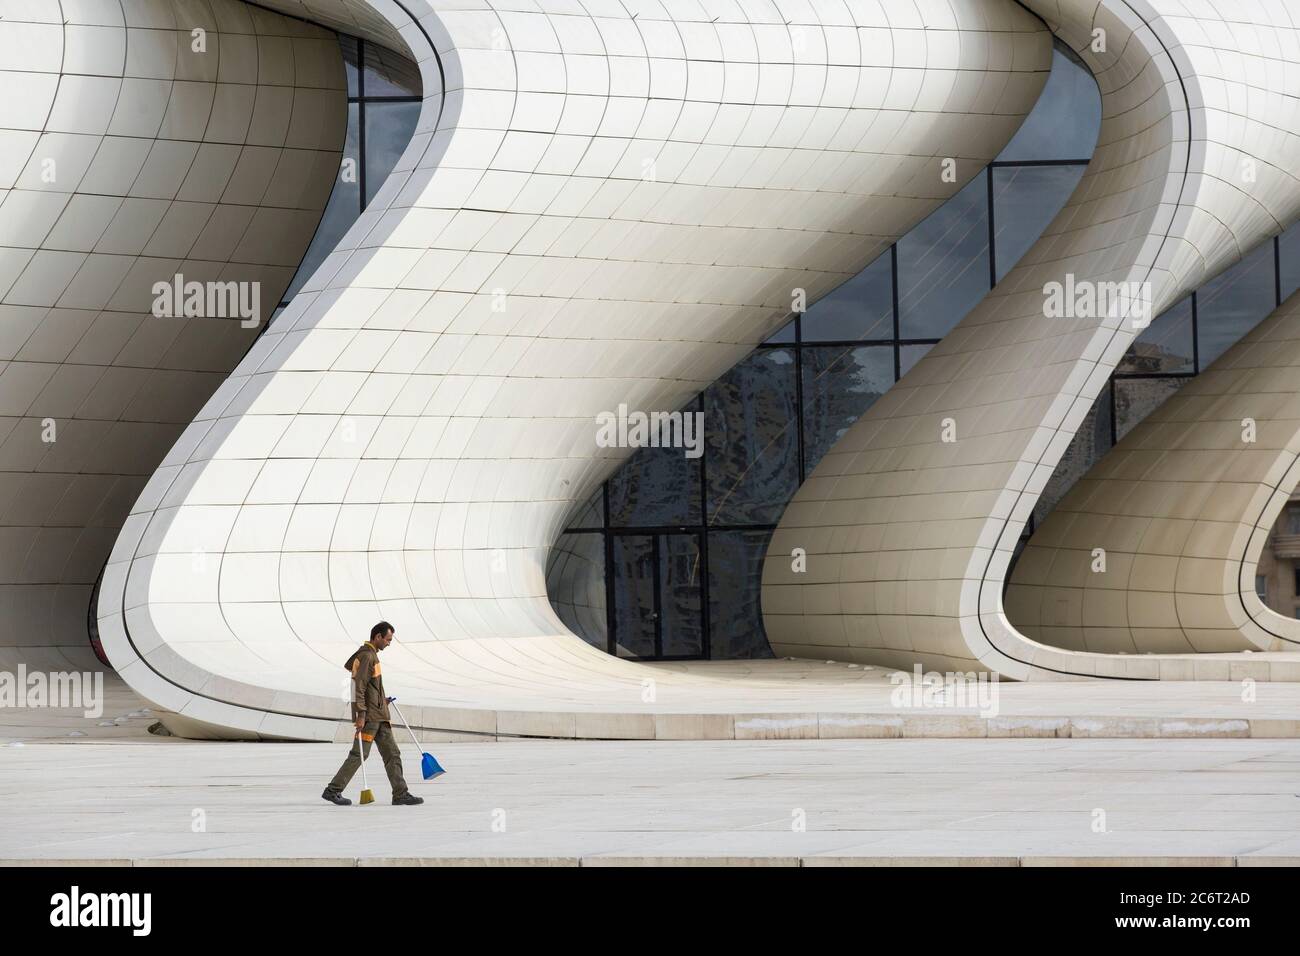 Ein Stadtputzer fegt Müll vor dem Heydar Aliyev Center, das von Zaha Hadid entworfen wurde, dem Herzstück der modernen Architektur in Baku Aserbaidschan Stockfoto